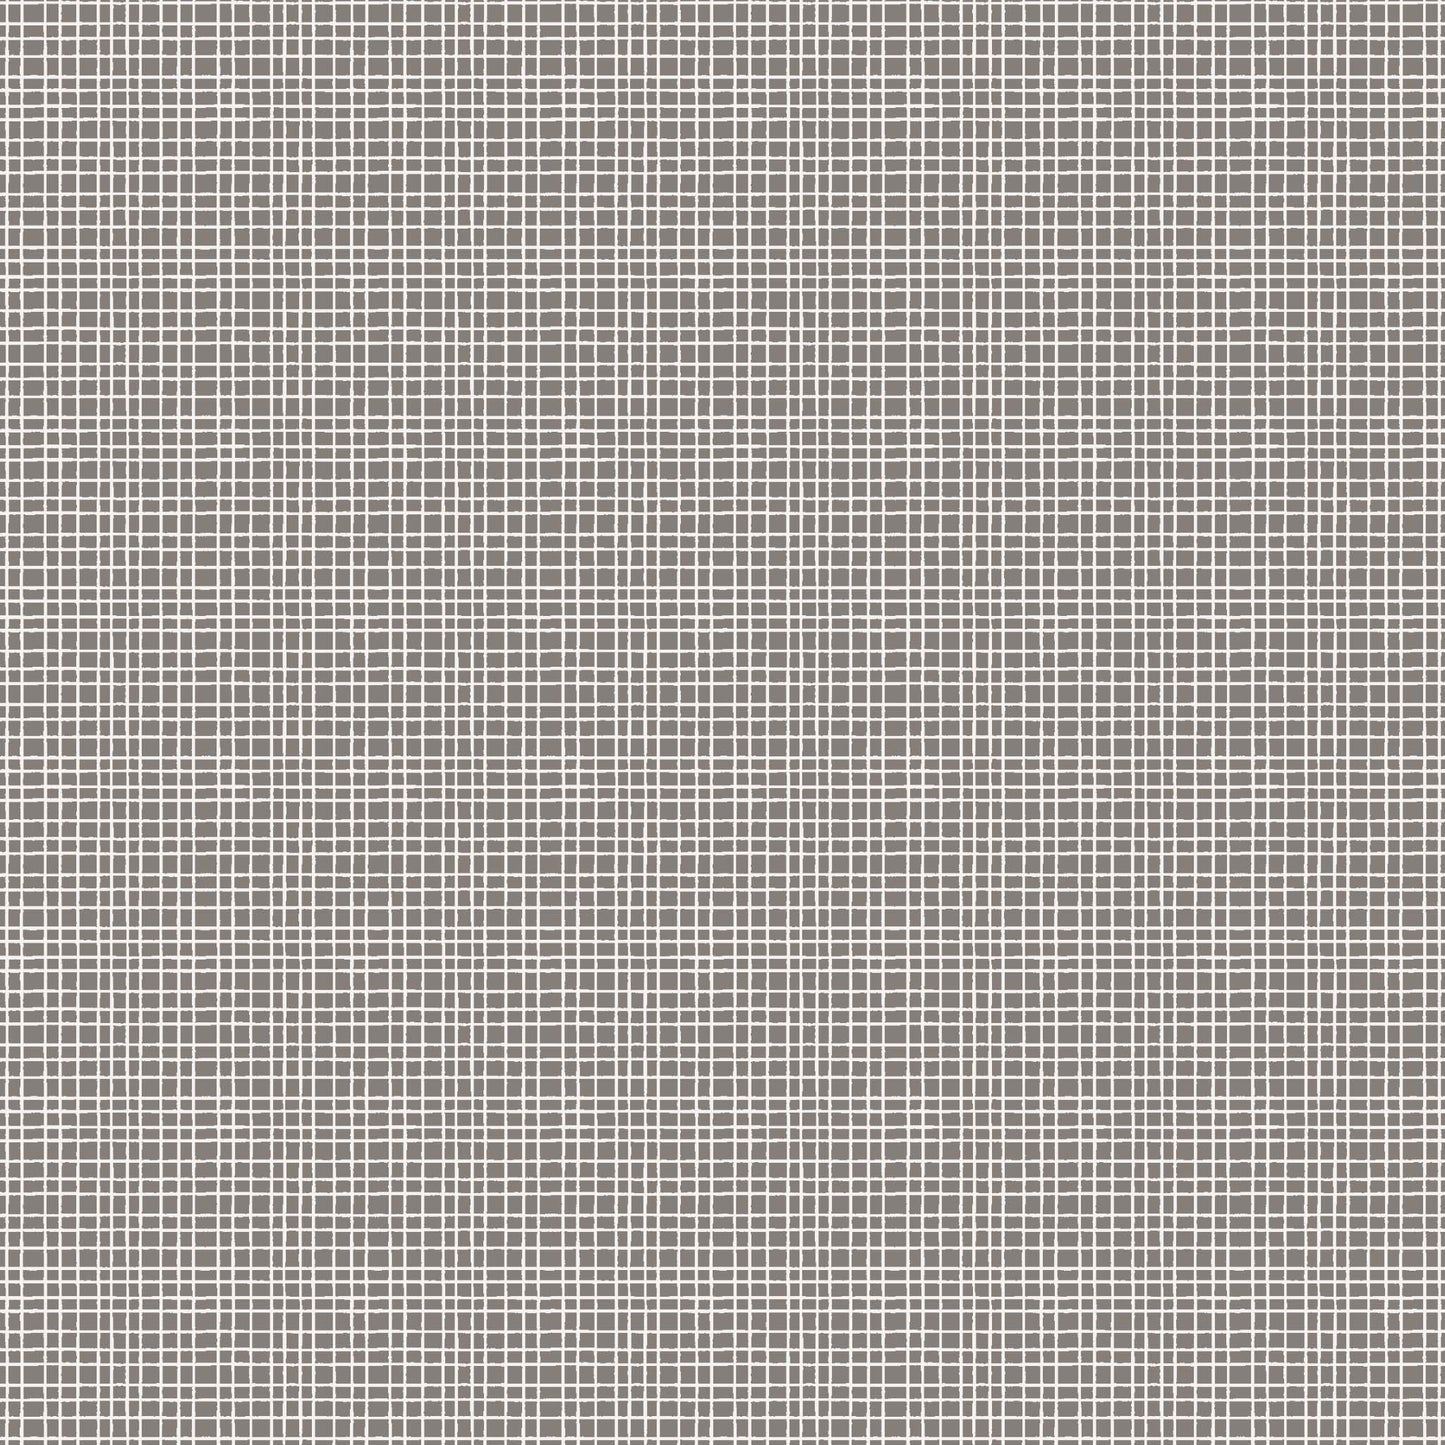 Tweed - Warm Gray